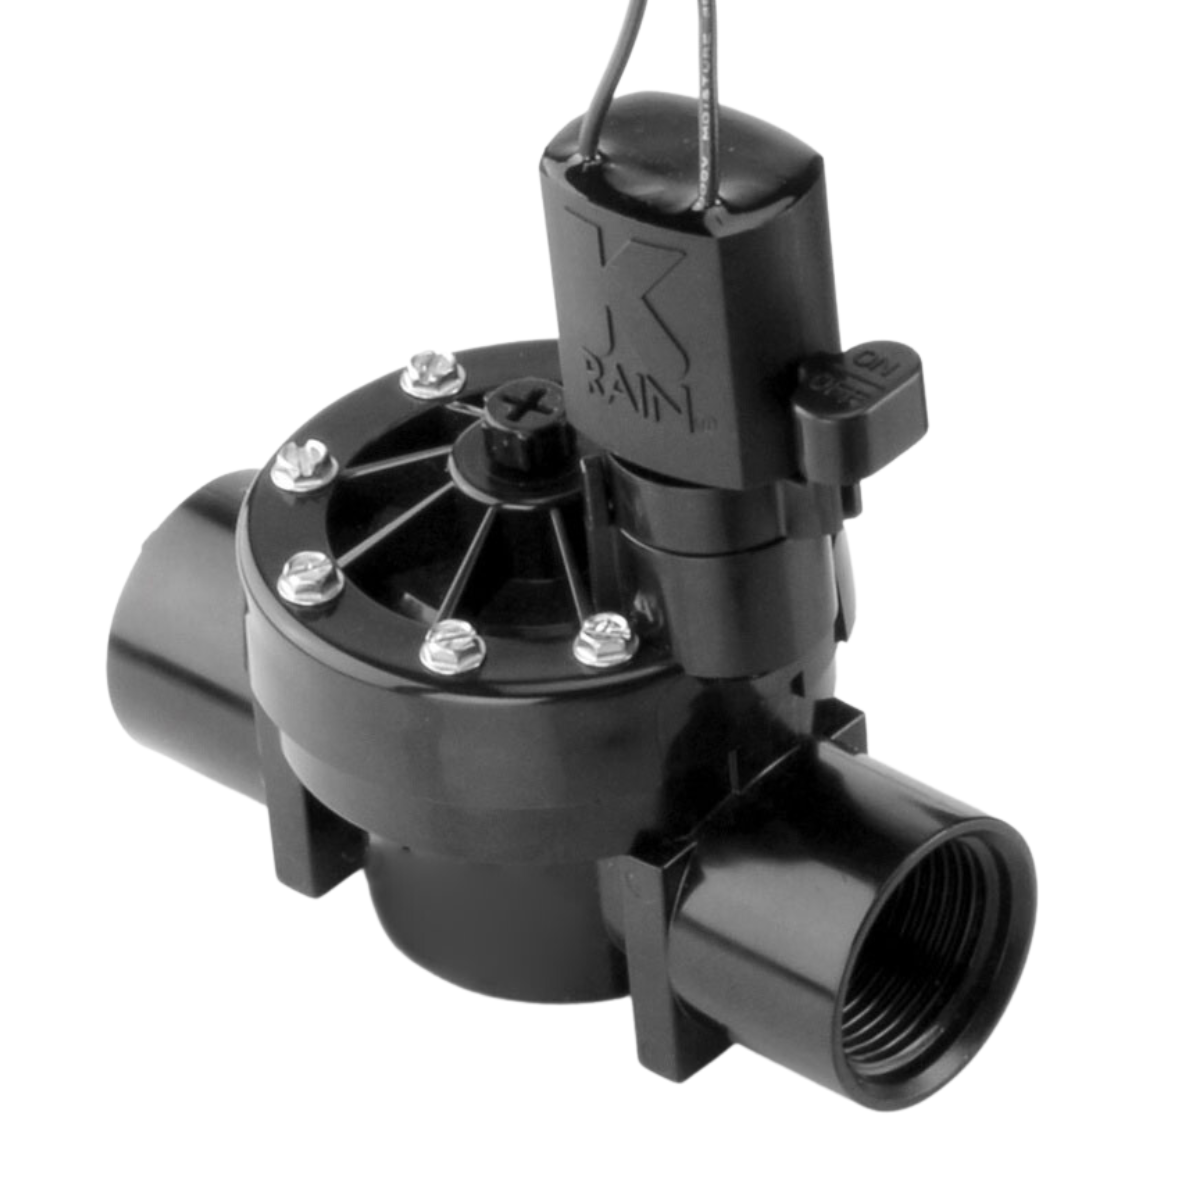 Válvula Elétrica Solenoide Pro 150 Irrigação 1" Bsp K-rain - 1